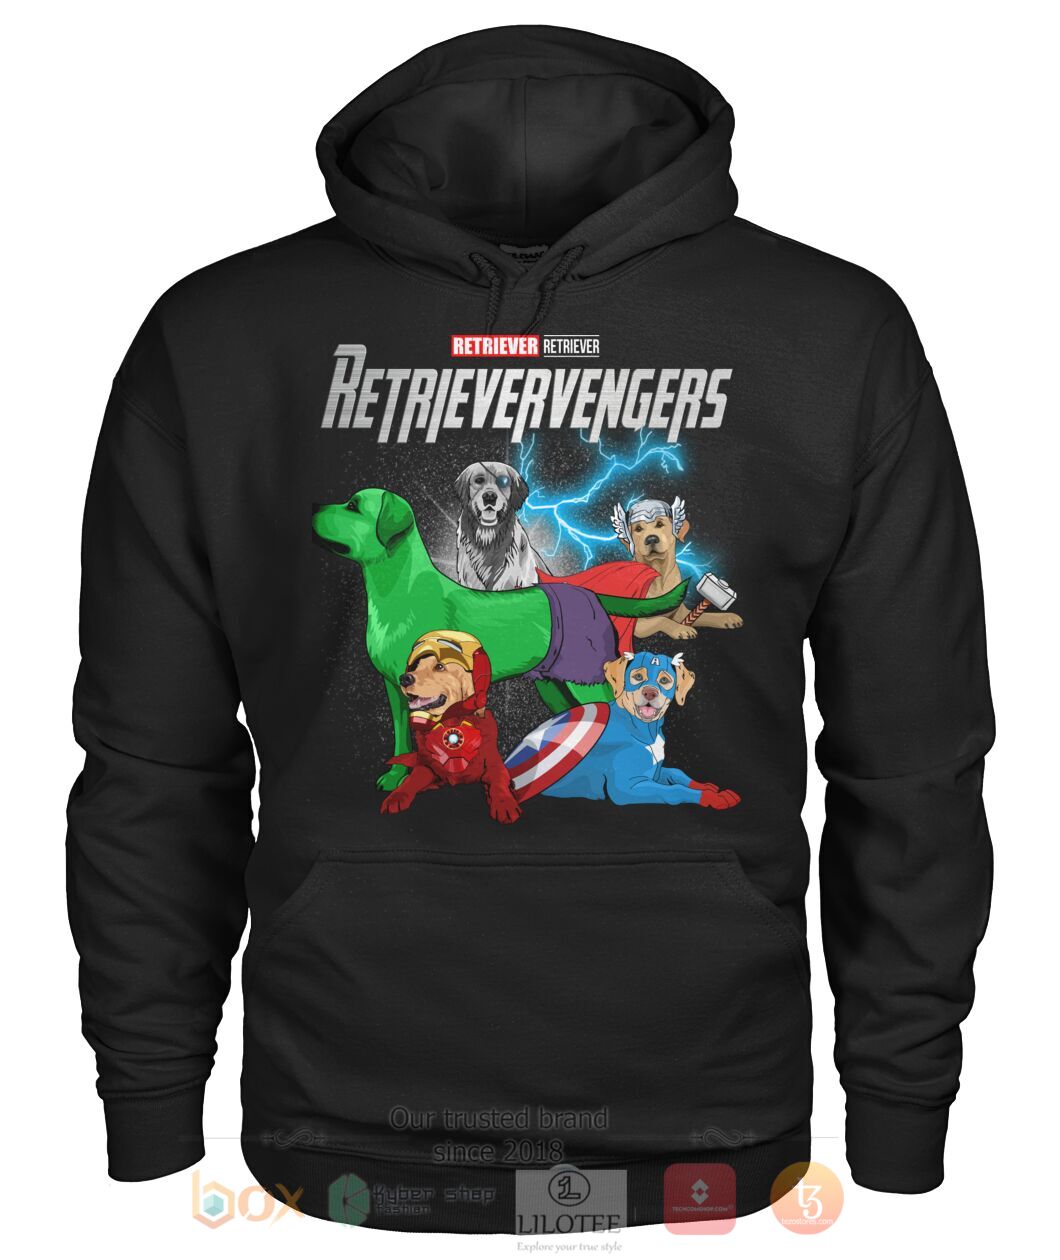 Retrievervengers 3D Hoodie Shirt 1